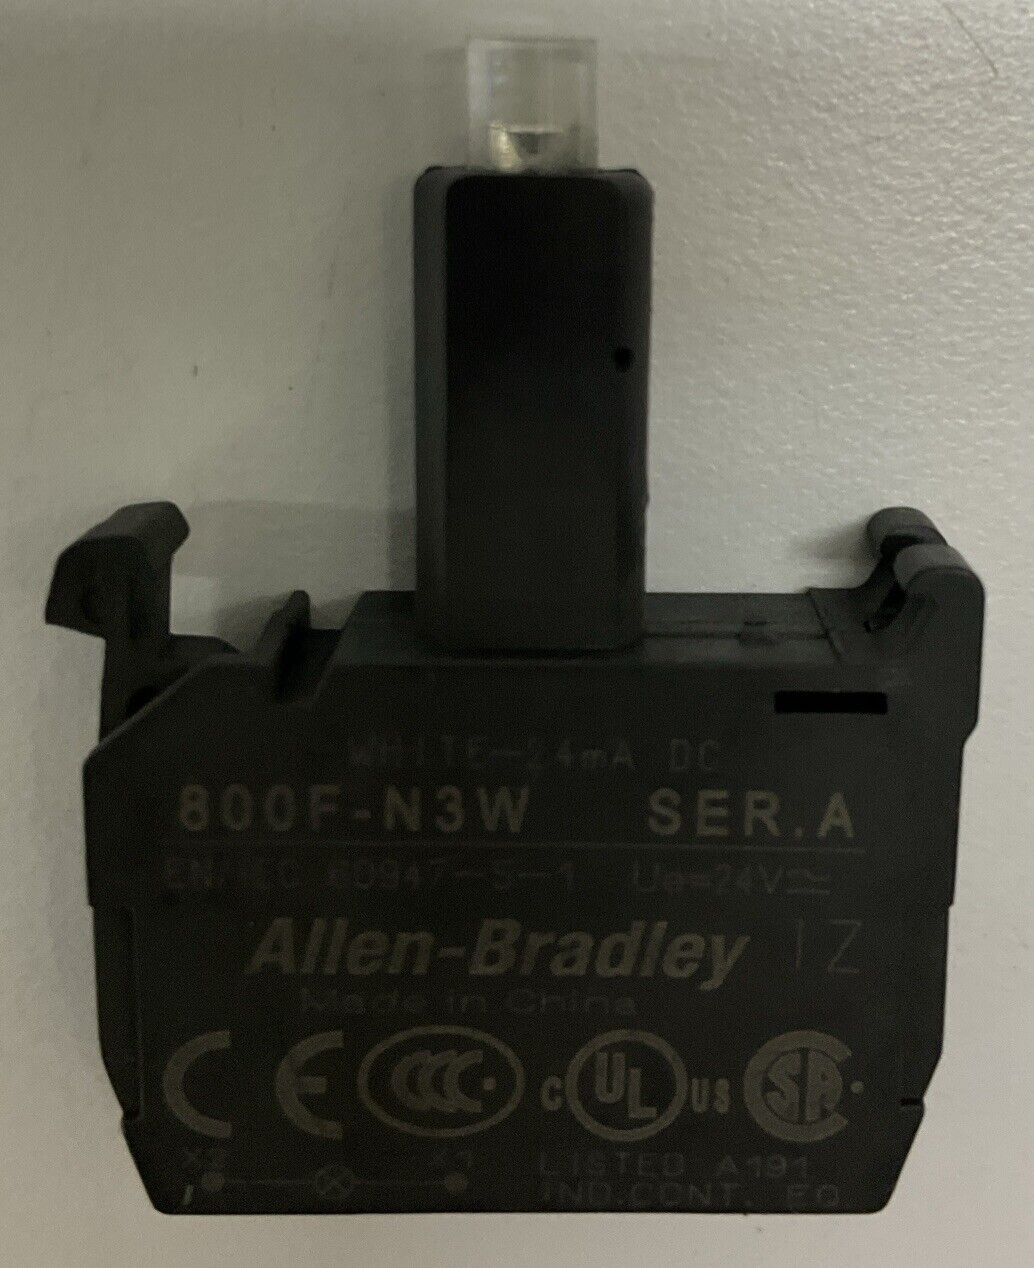 Allen Bradley 800F-N3W Ser. A White Led Module 24VDC (BL297) - 0